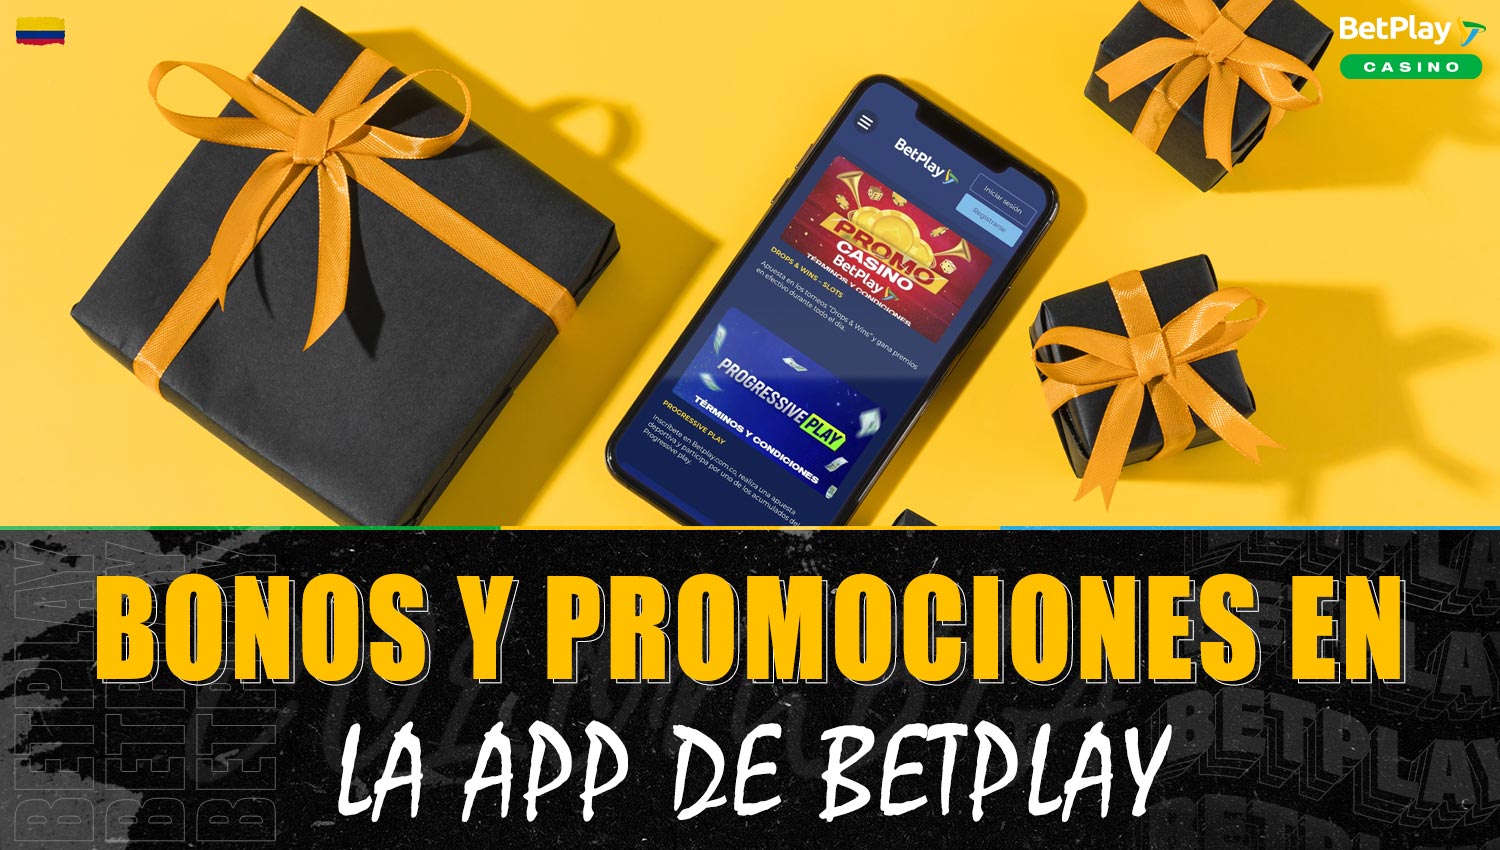 Información detallada sobre bonos y promociones de casino en la aplicación móvil de Betplay Colombia